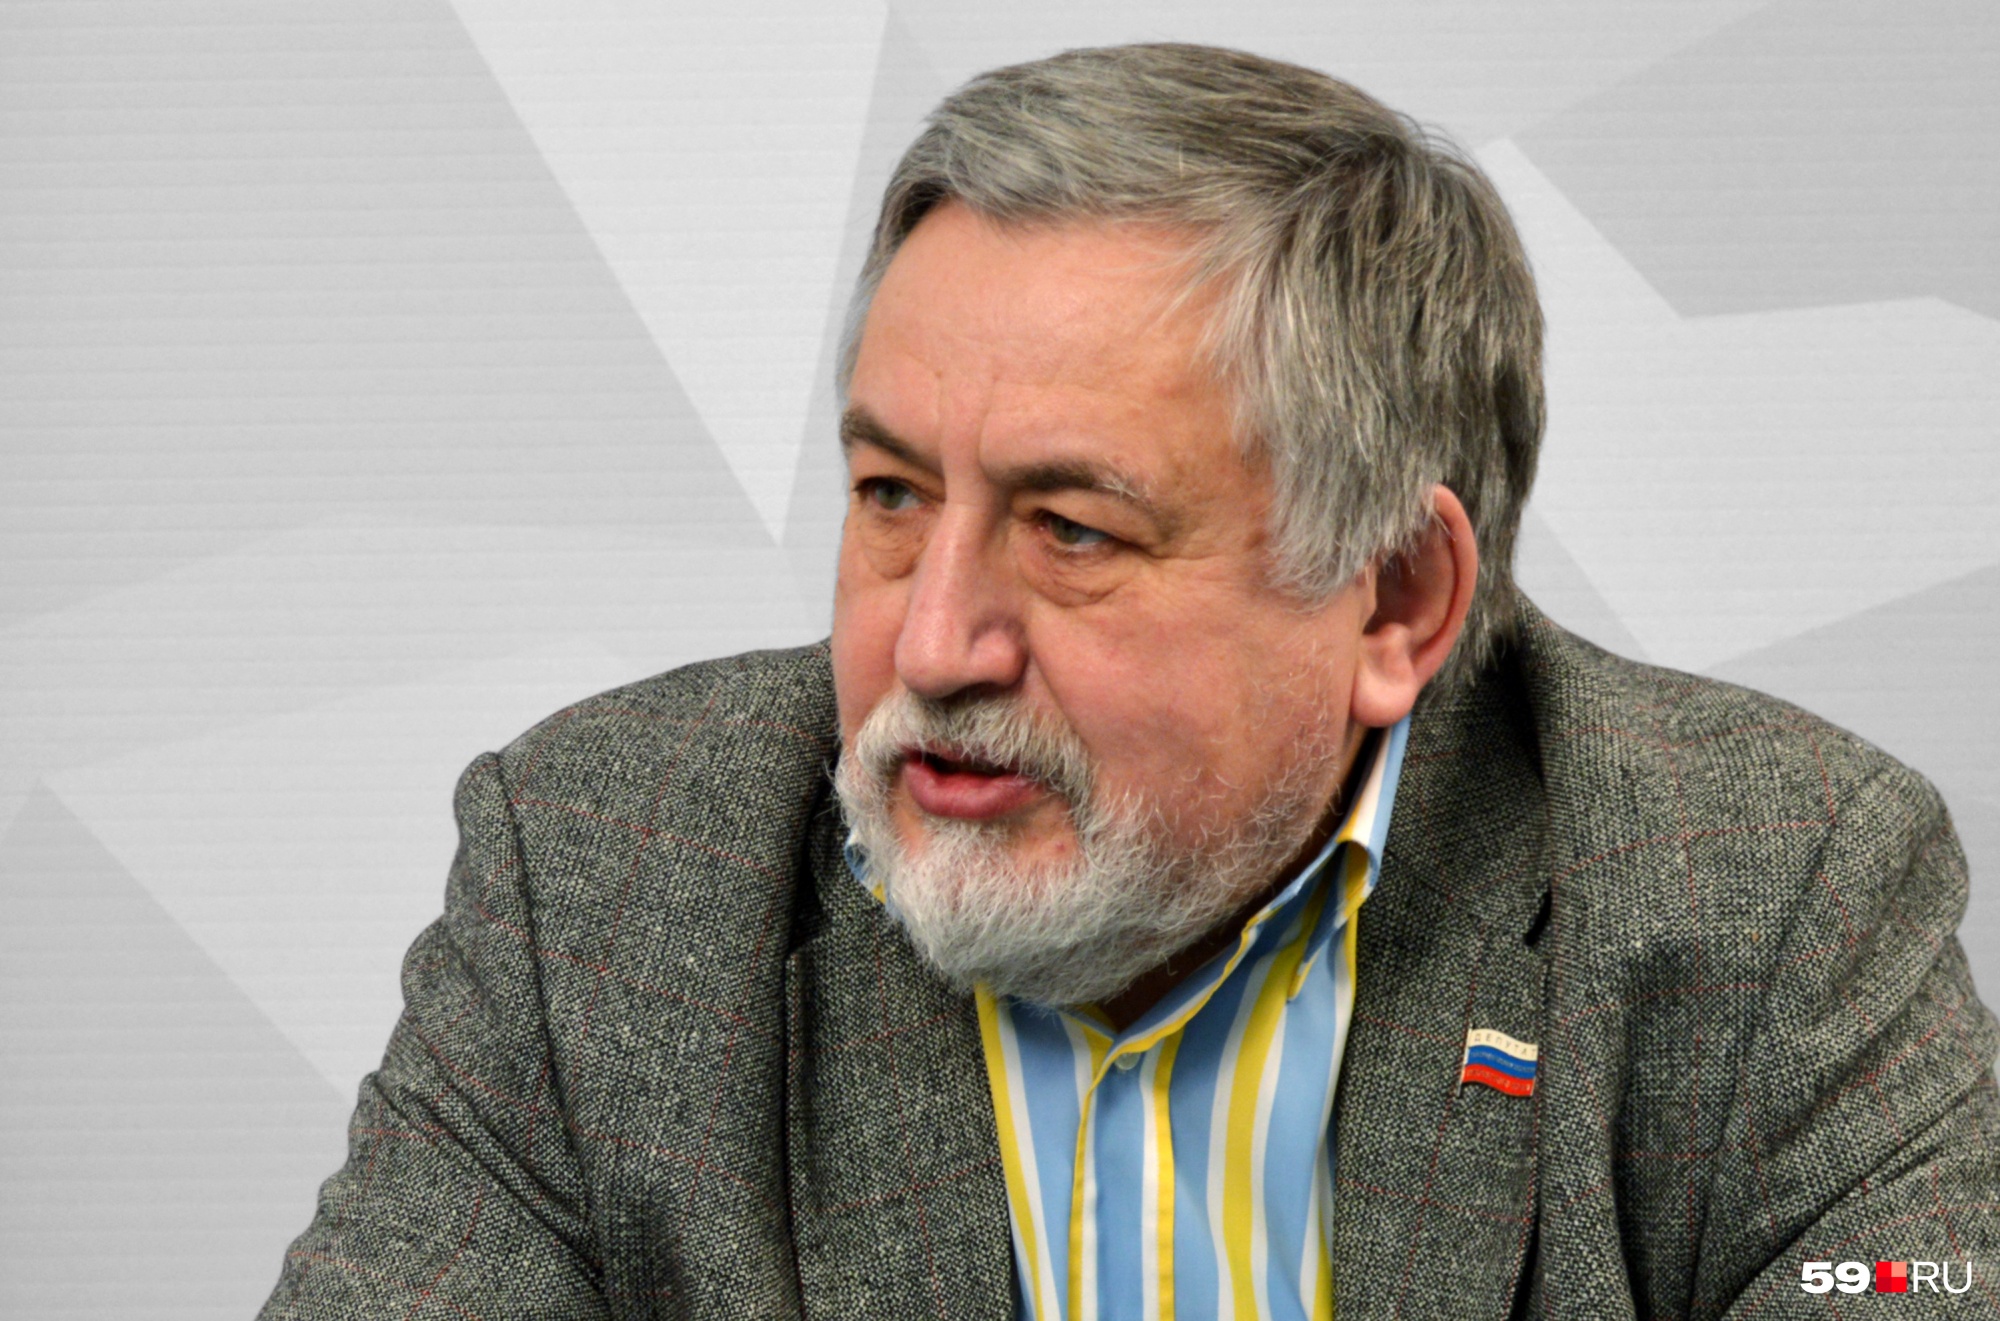 Геннадий Кузьмицкий — не только экс-депутат и промышленник, но и автор более 80 научных трудов